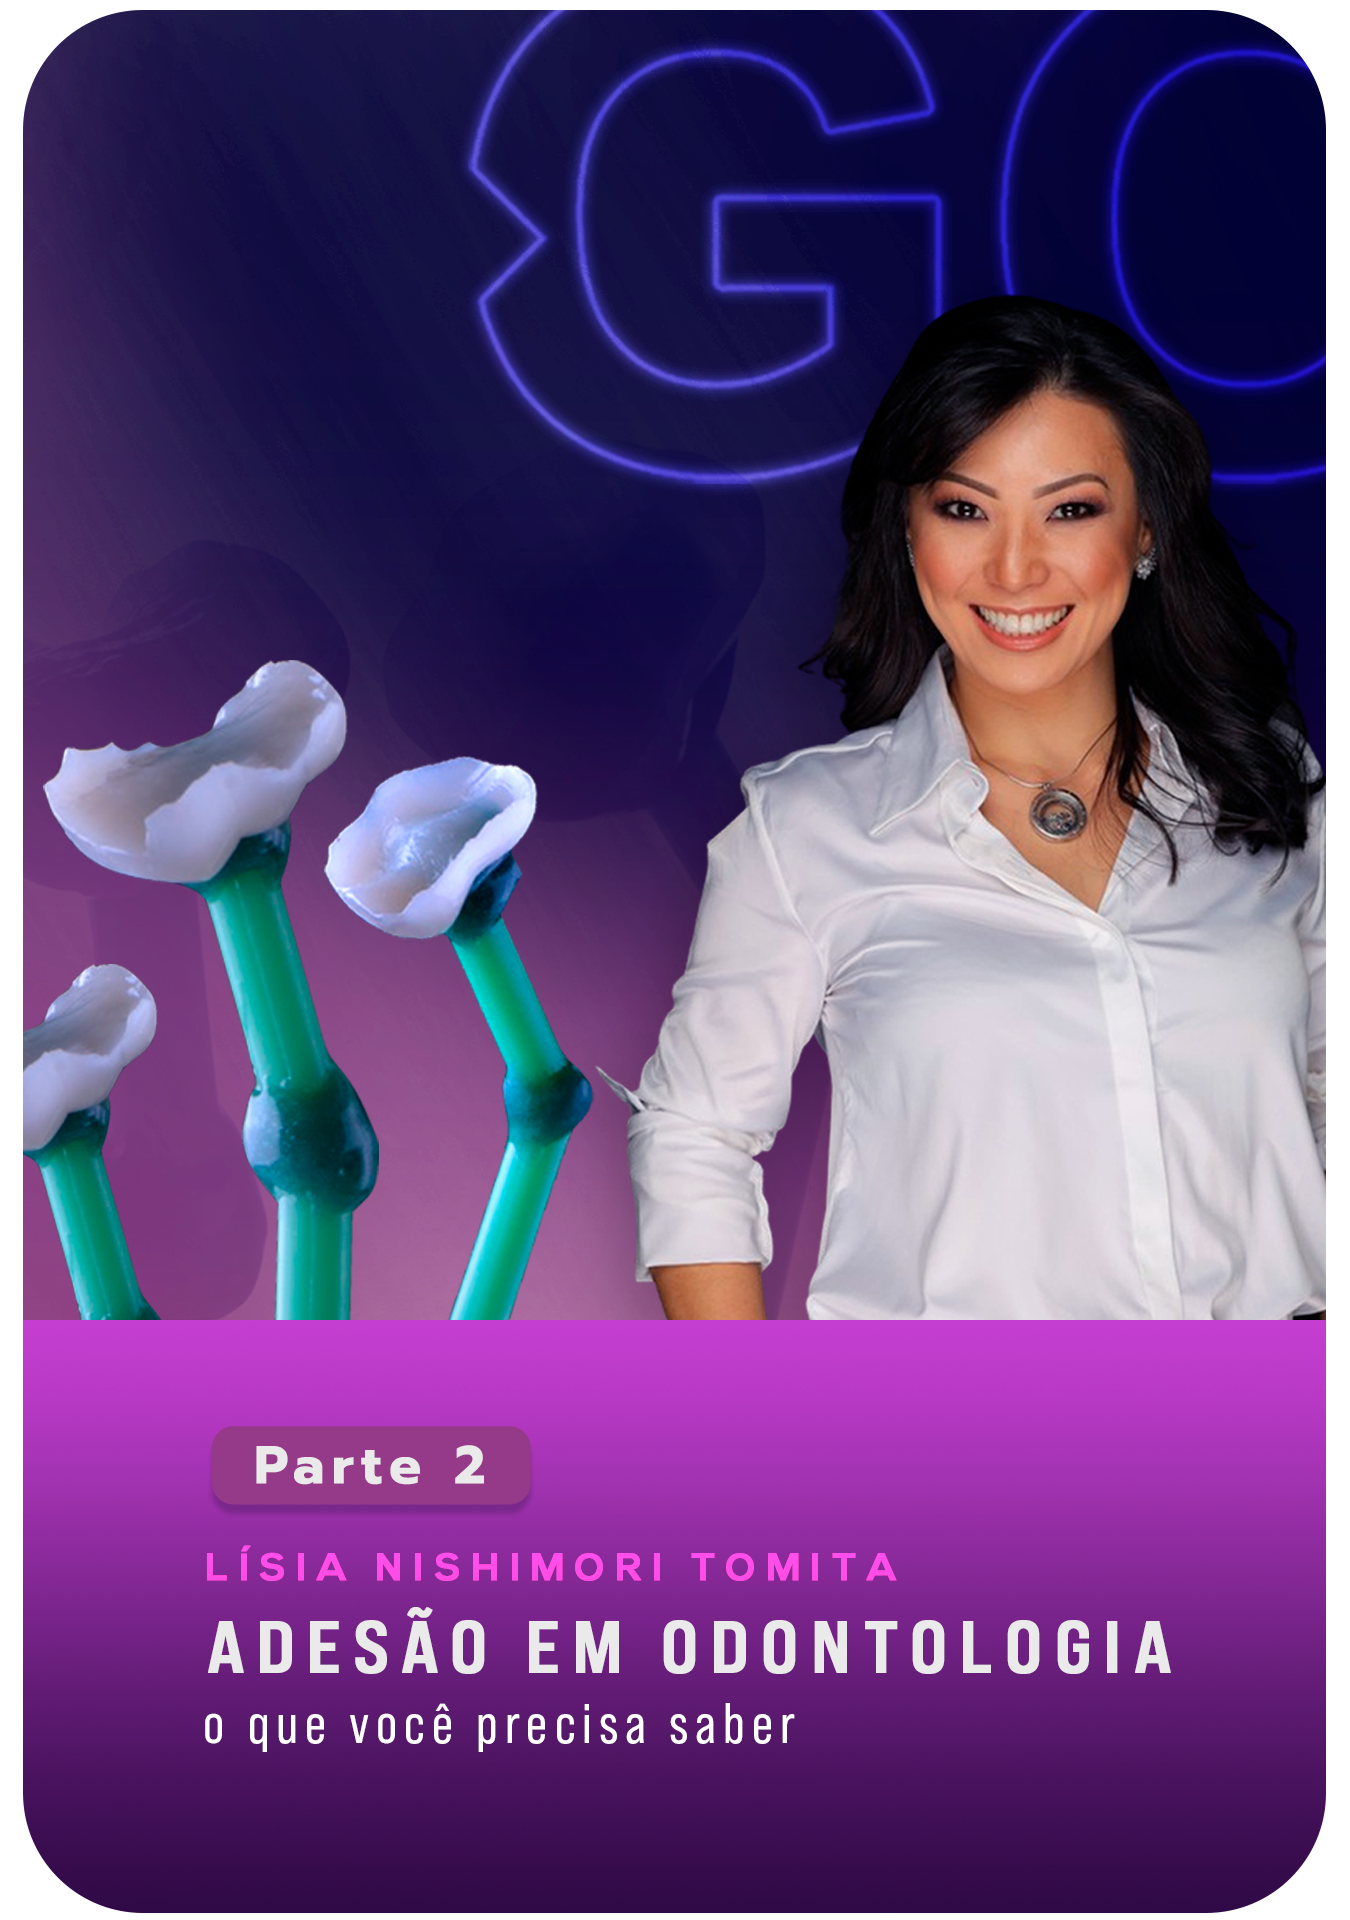 Adesão em Odontologia: O que você precisa saber - Parte 2 - Lisia Nishimori Tomita